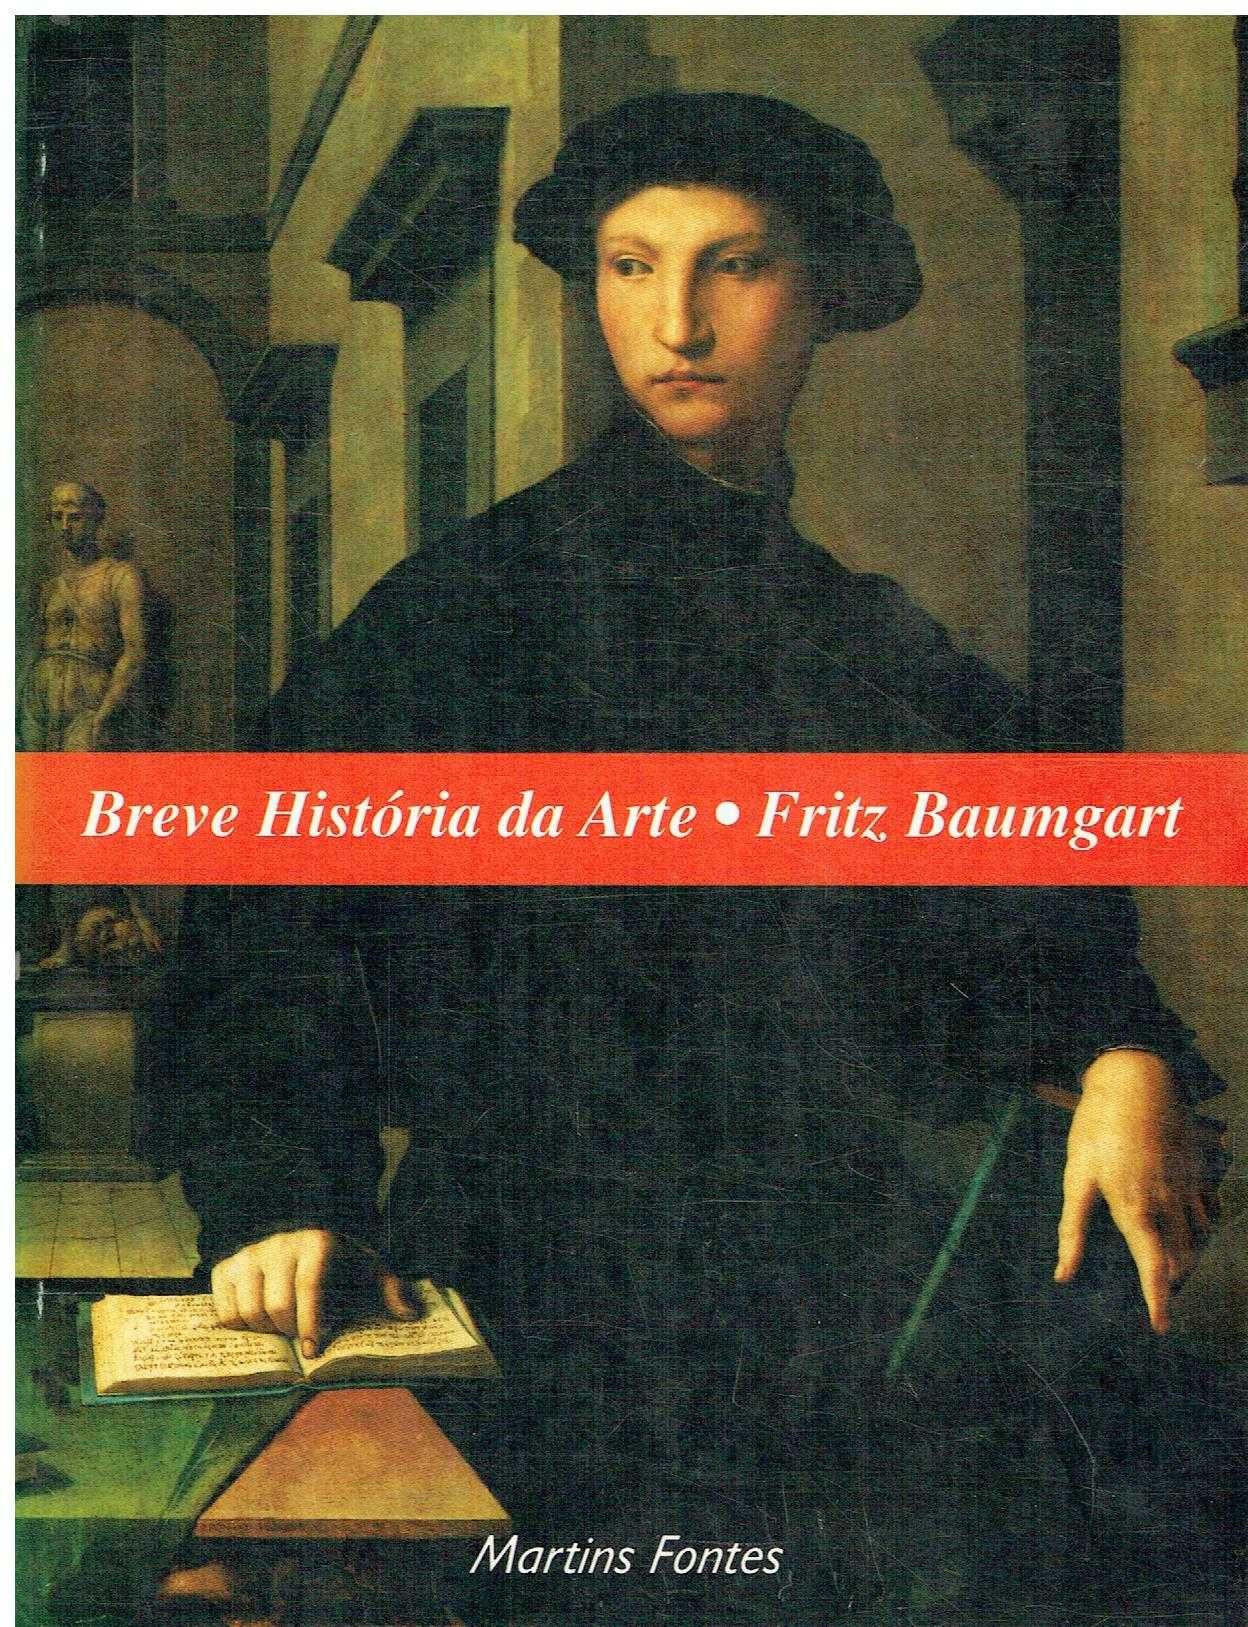 13588

Breve História da Arte
de Fritz Baumgart